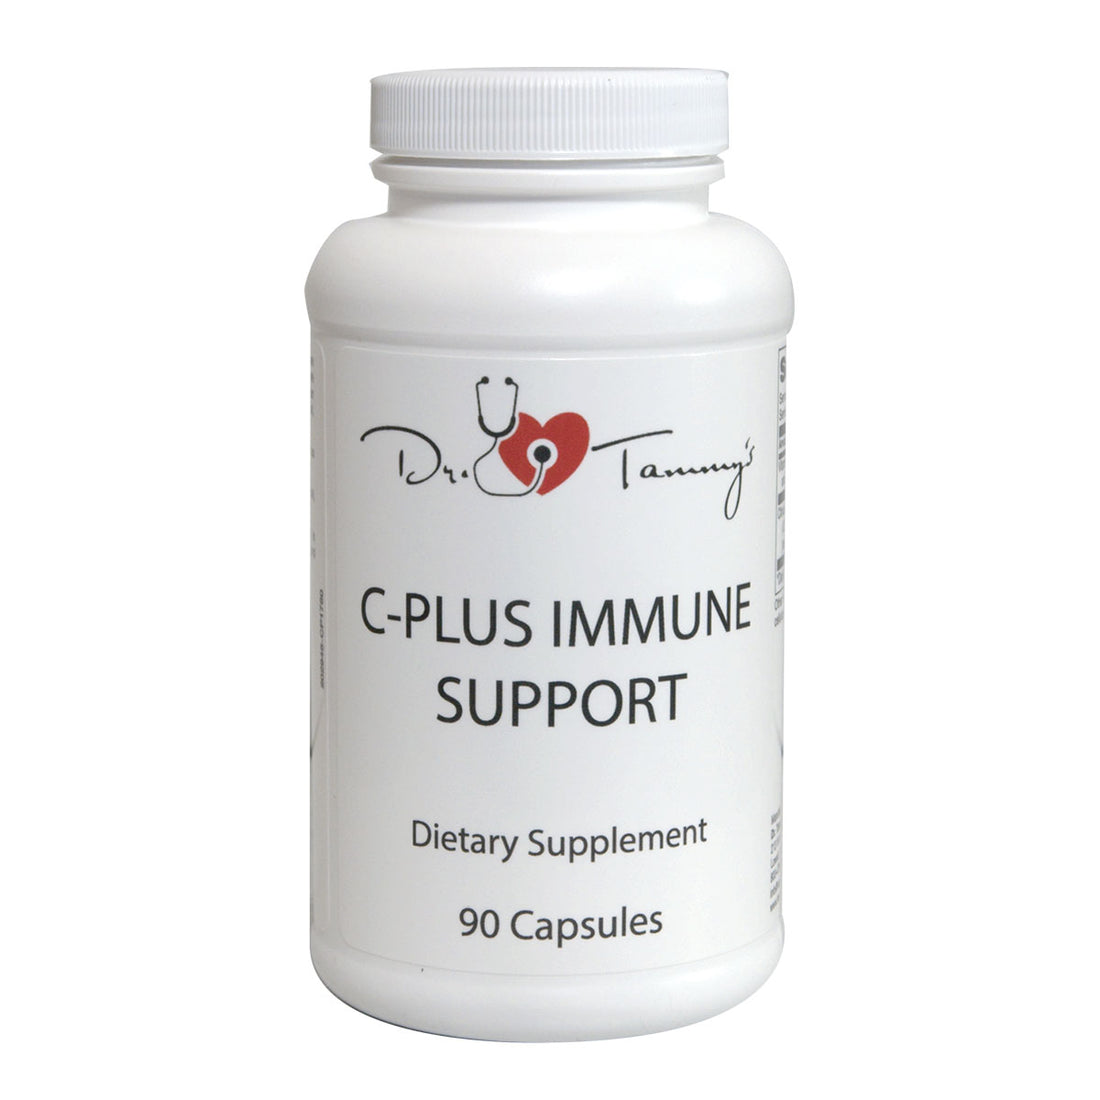 C Plus Immune Support